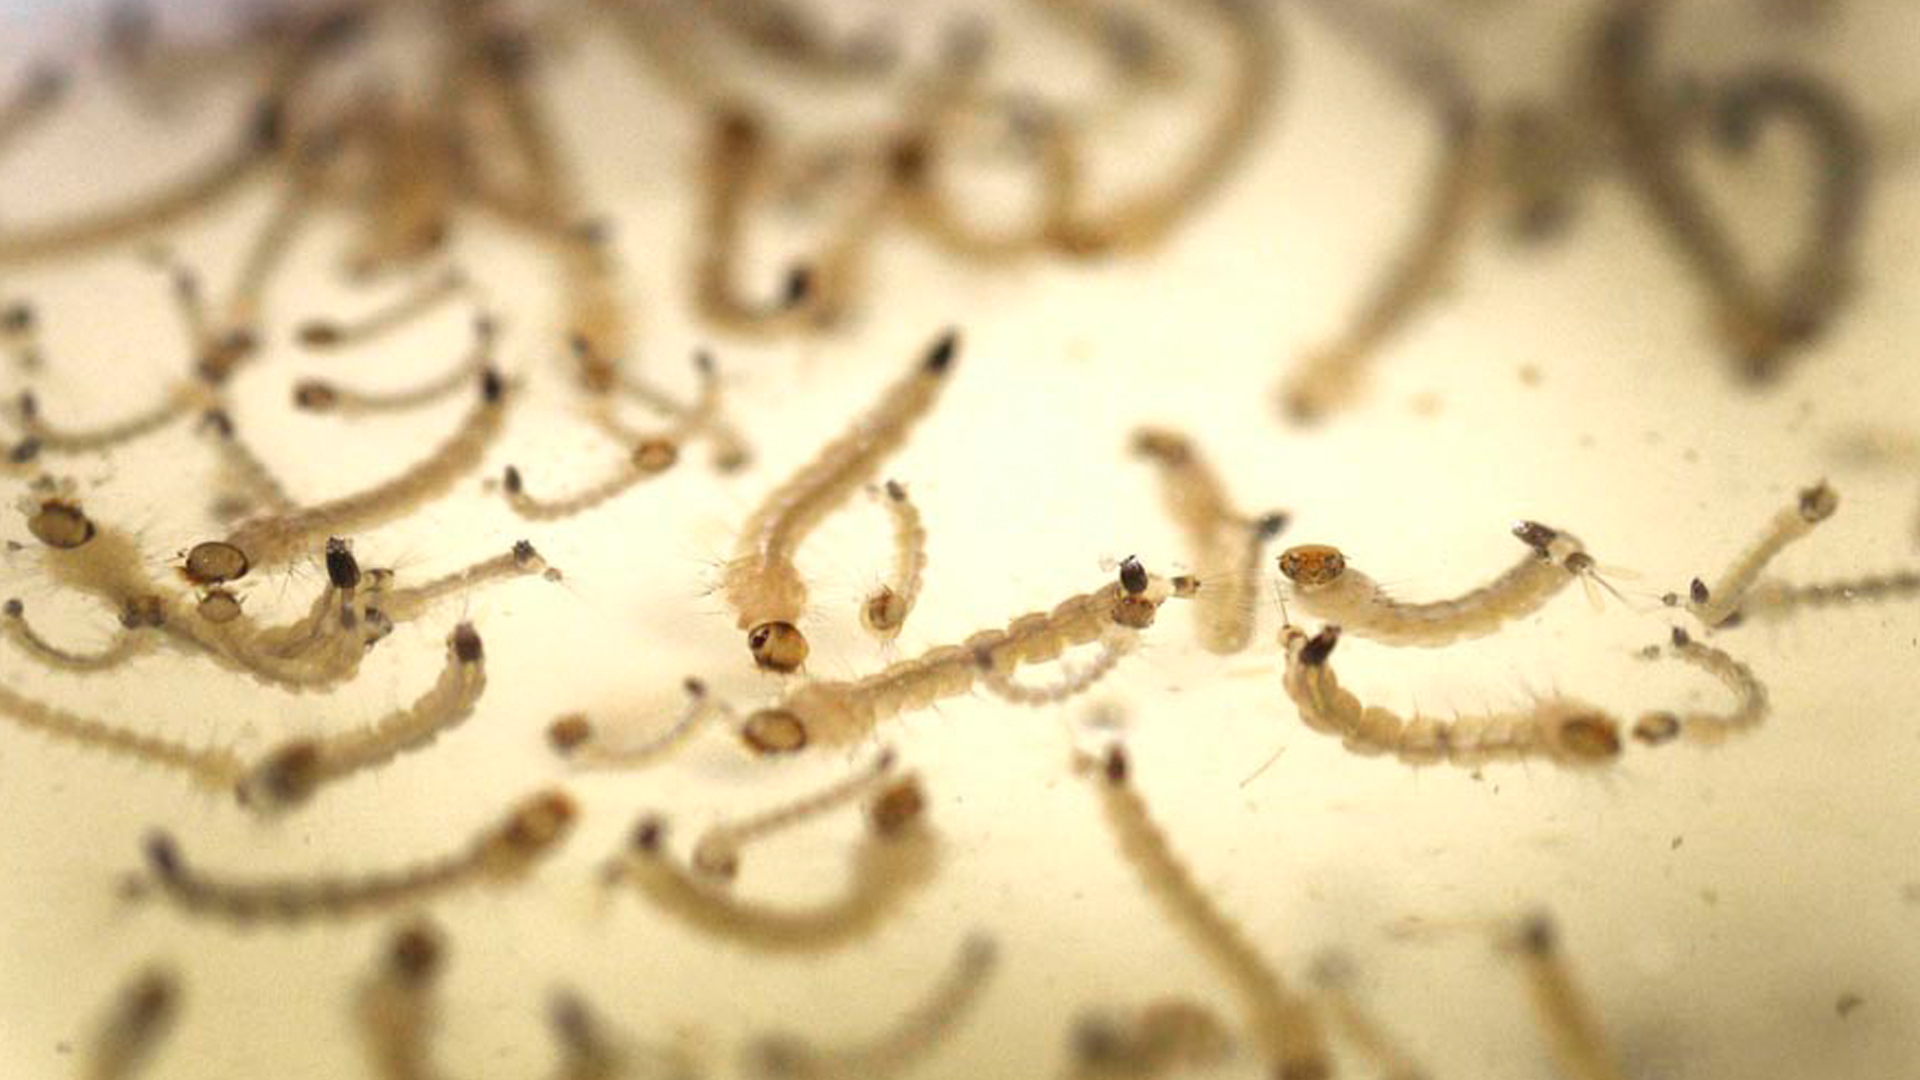 Las larvas de mosquito son unos de los puntos más difíciles de combatir, aunque la madrecita de agua es la solución, según los expertos / Archivo